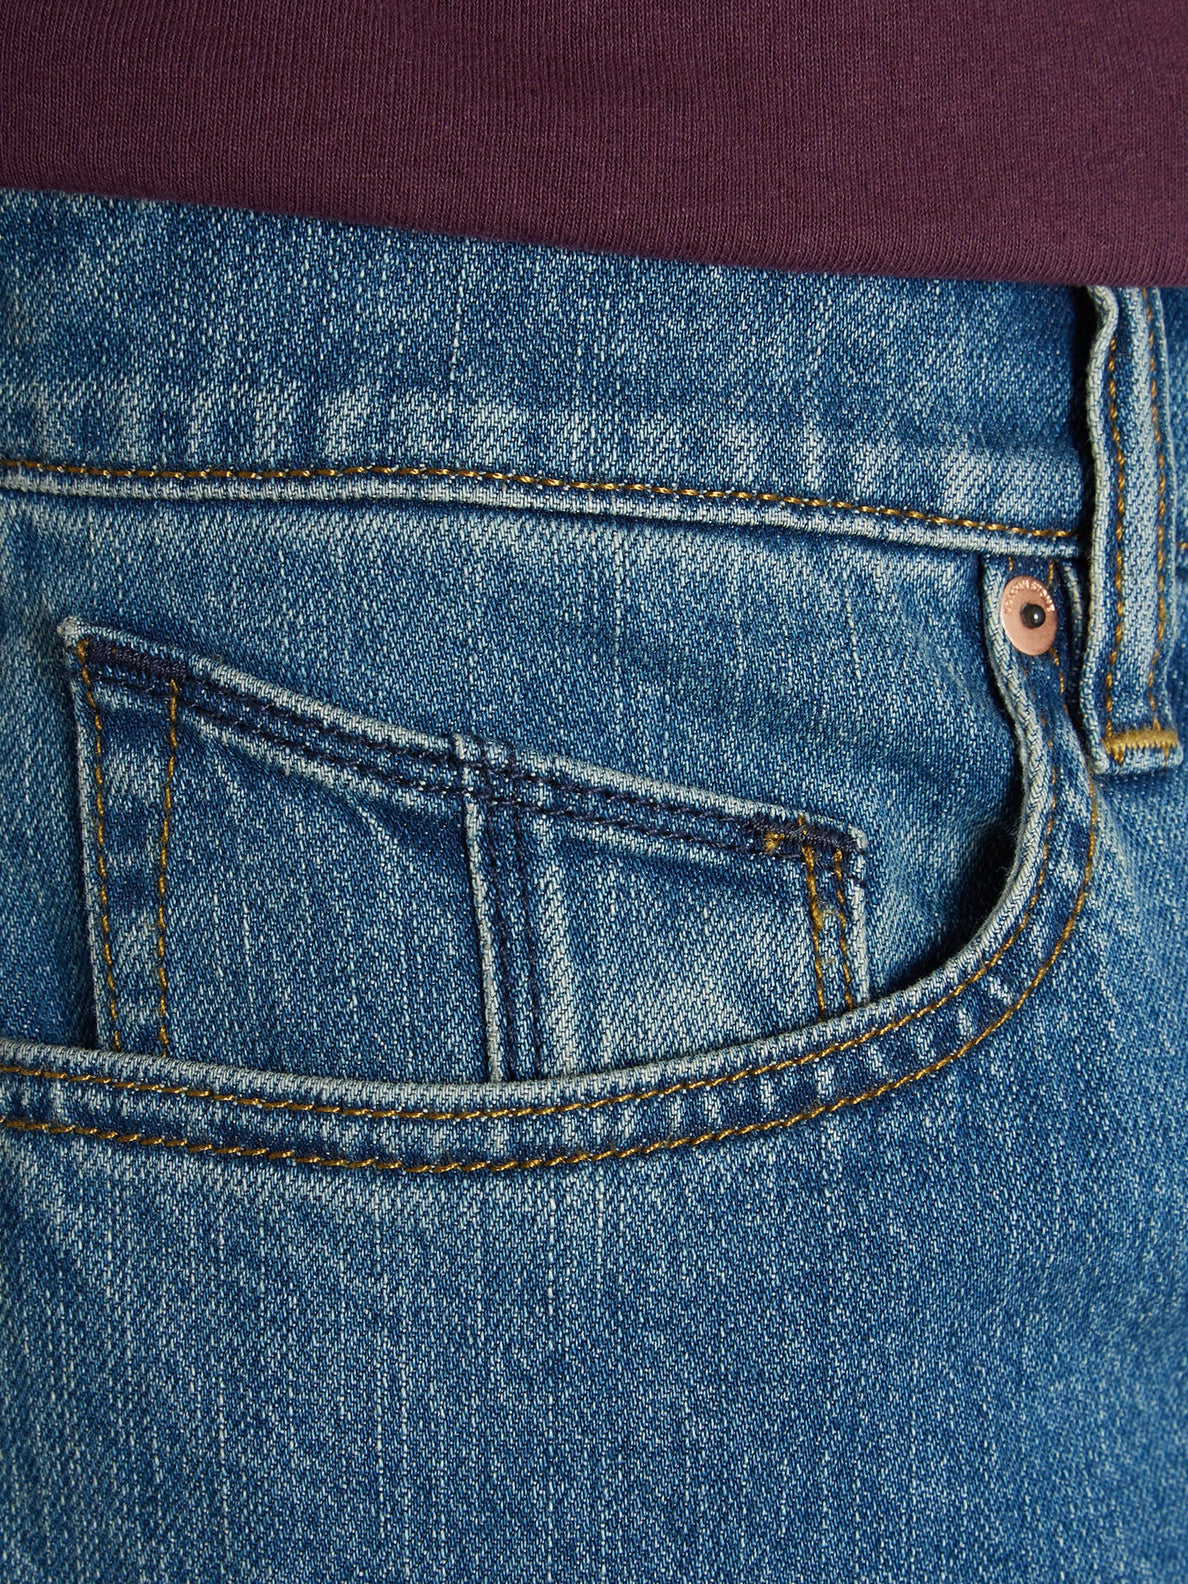 Solver Jeans - AGED INDIGO (A1912303_AIN) [5]